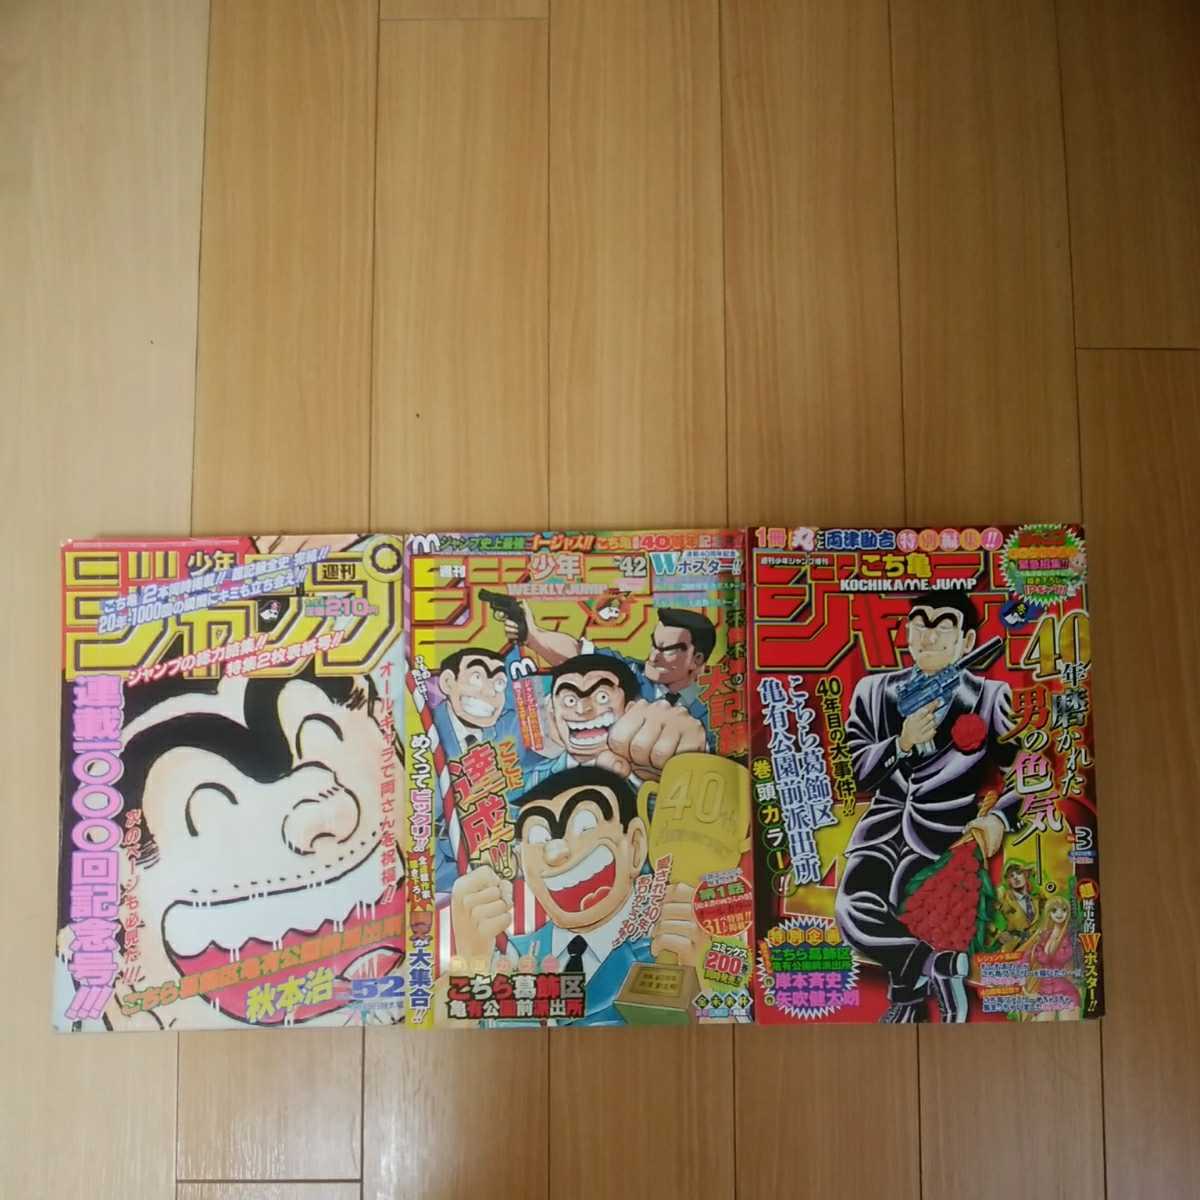 Tanakasan Shop 週刊少年ジャンプ 96年52号 16年42号 こち亀増刊号セット